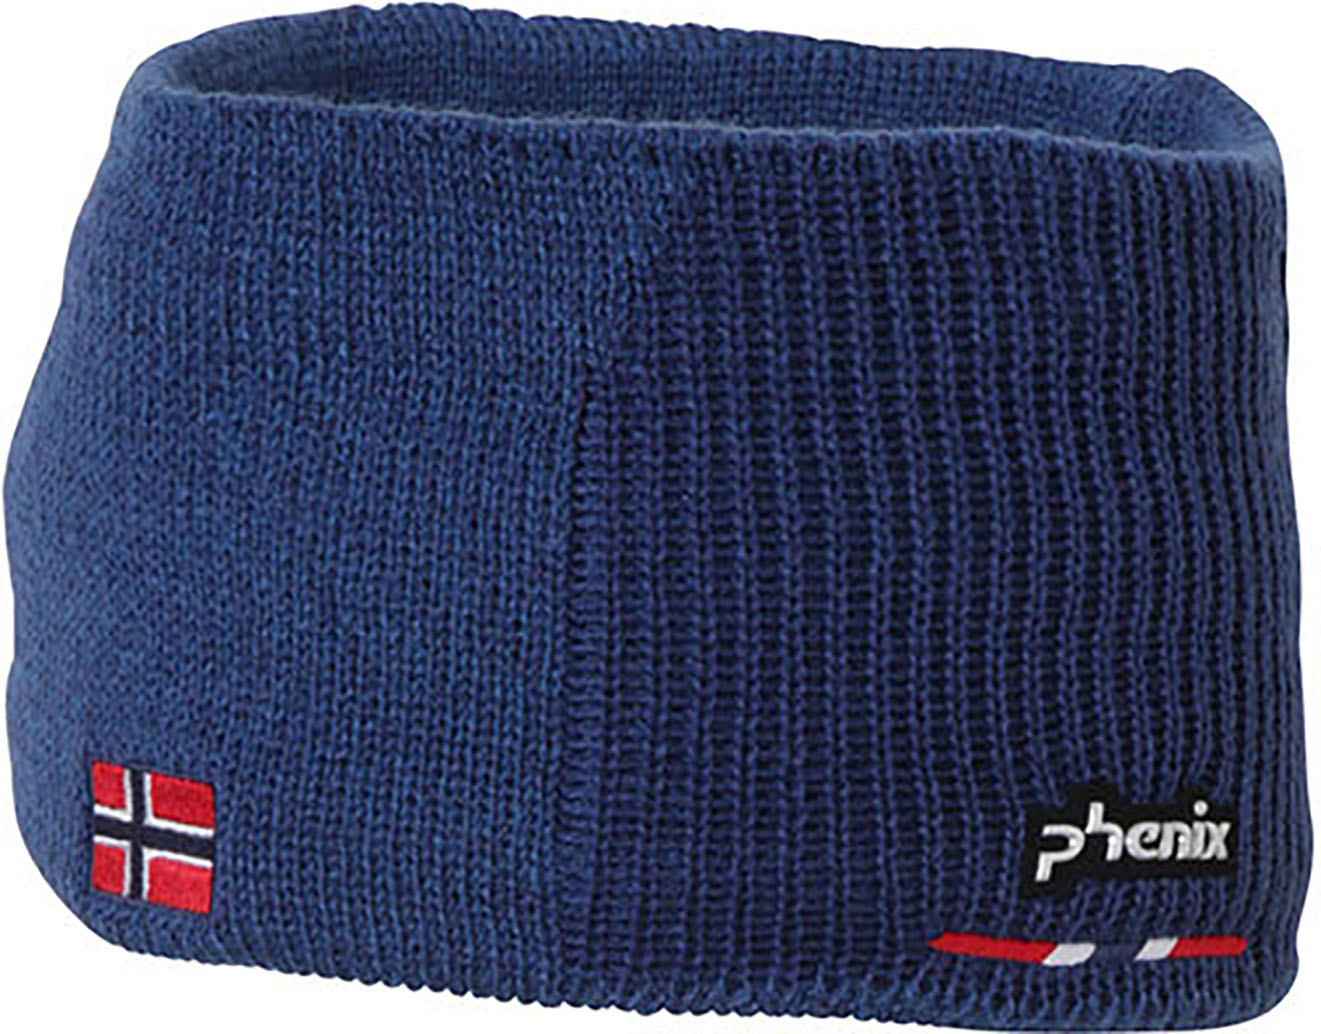  Phenix Norway Alpine Team Head Band (Dark blue)